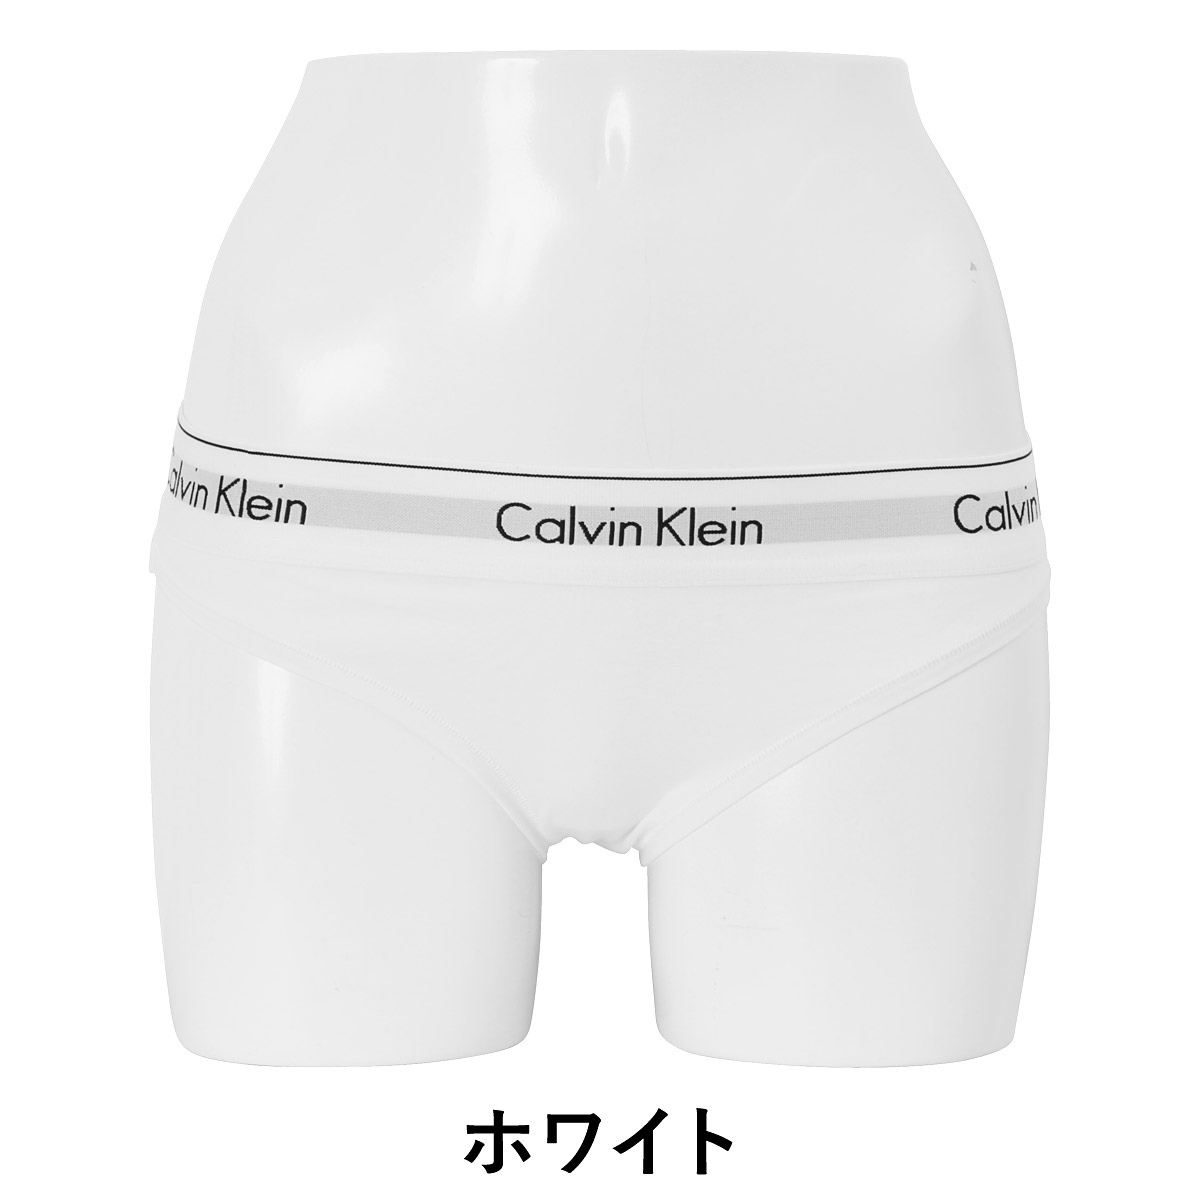 Calvin Klein/カルバンクラインmodern cotton レディース ショーツ ビキニ(f3787)｜【全品送料無料】人気ブランド